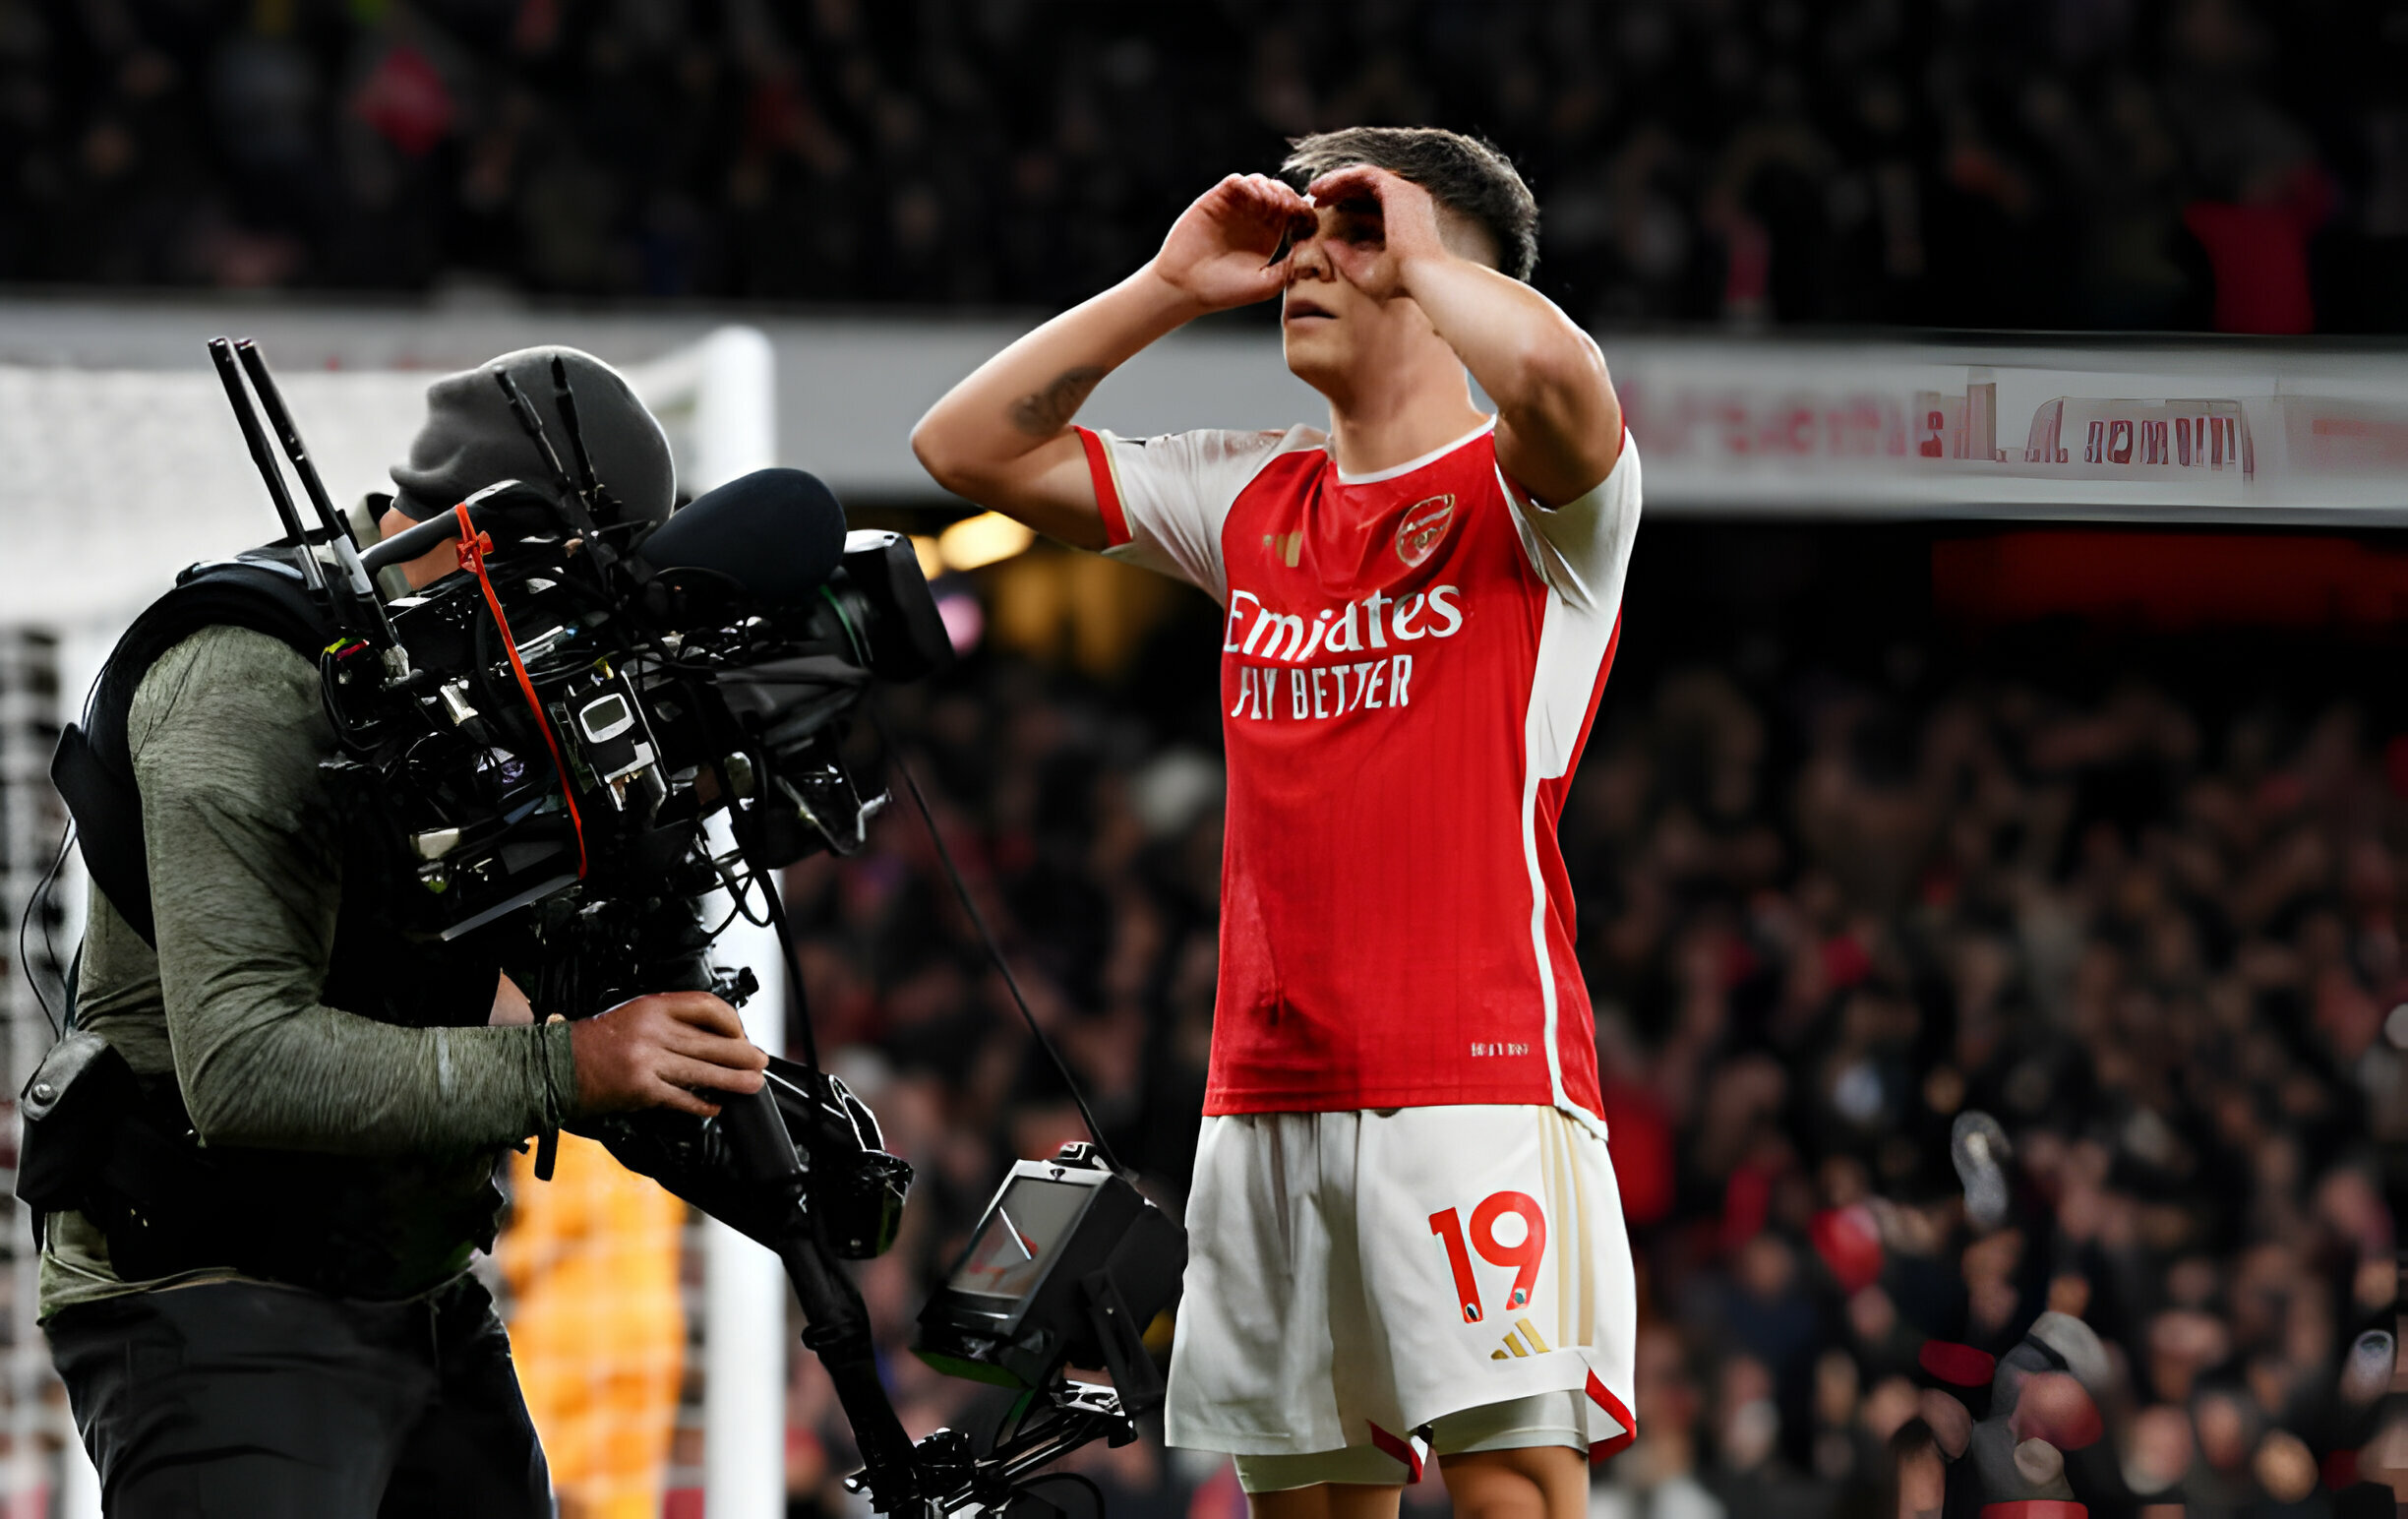 TRỰC TIẾP Arsenal 3-1 Liverpool (H2): Trossard khiến cho Emirates nổ tung - Bóng Đá